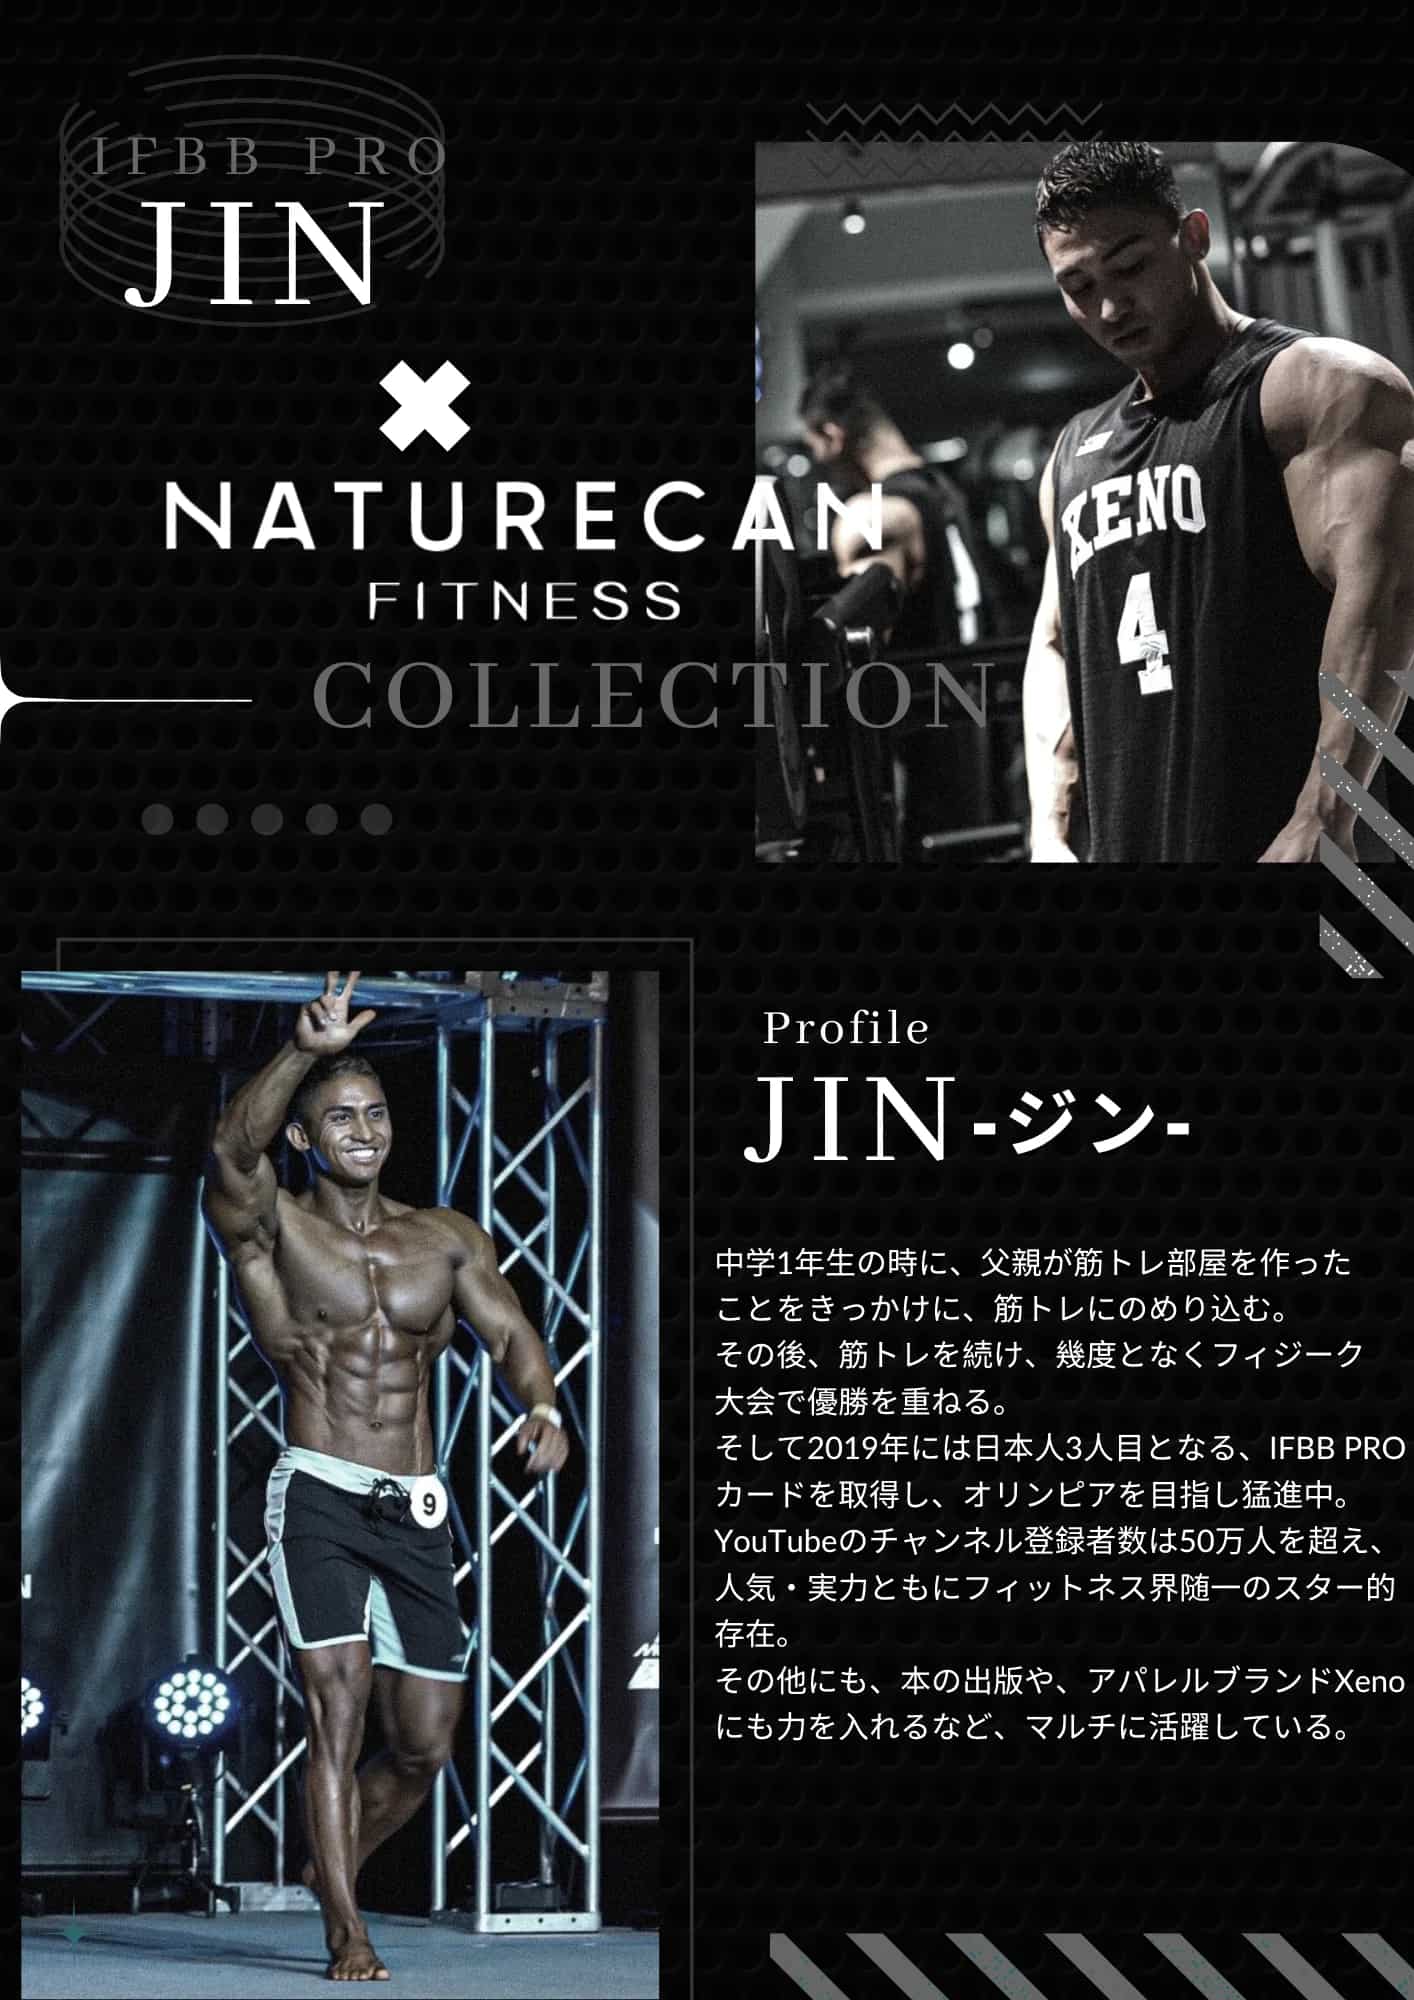 jin naturecan fitness japan